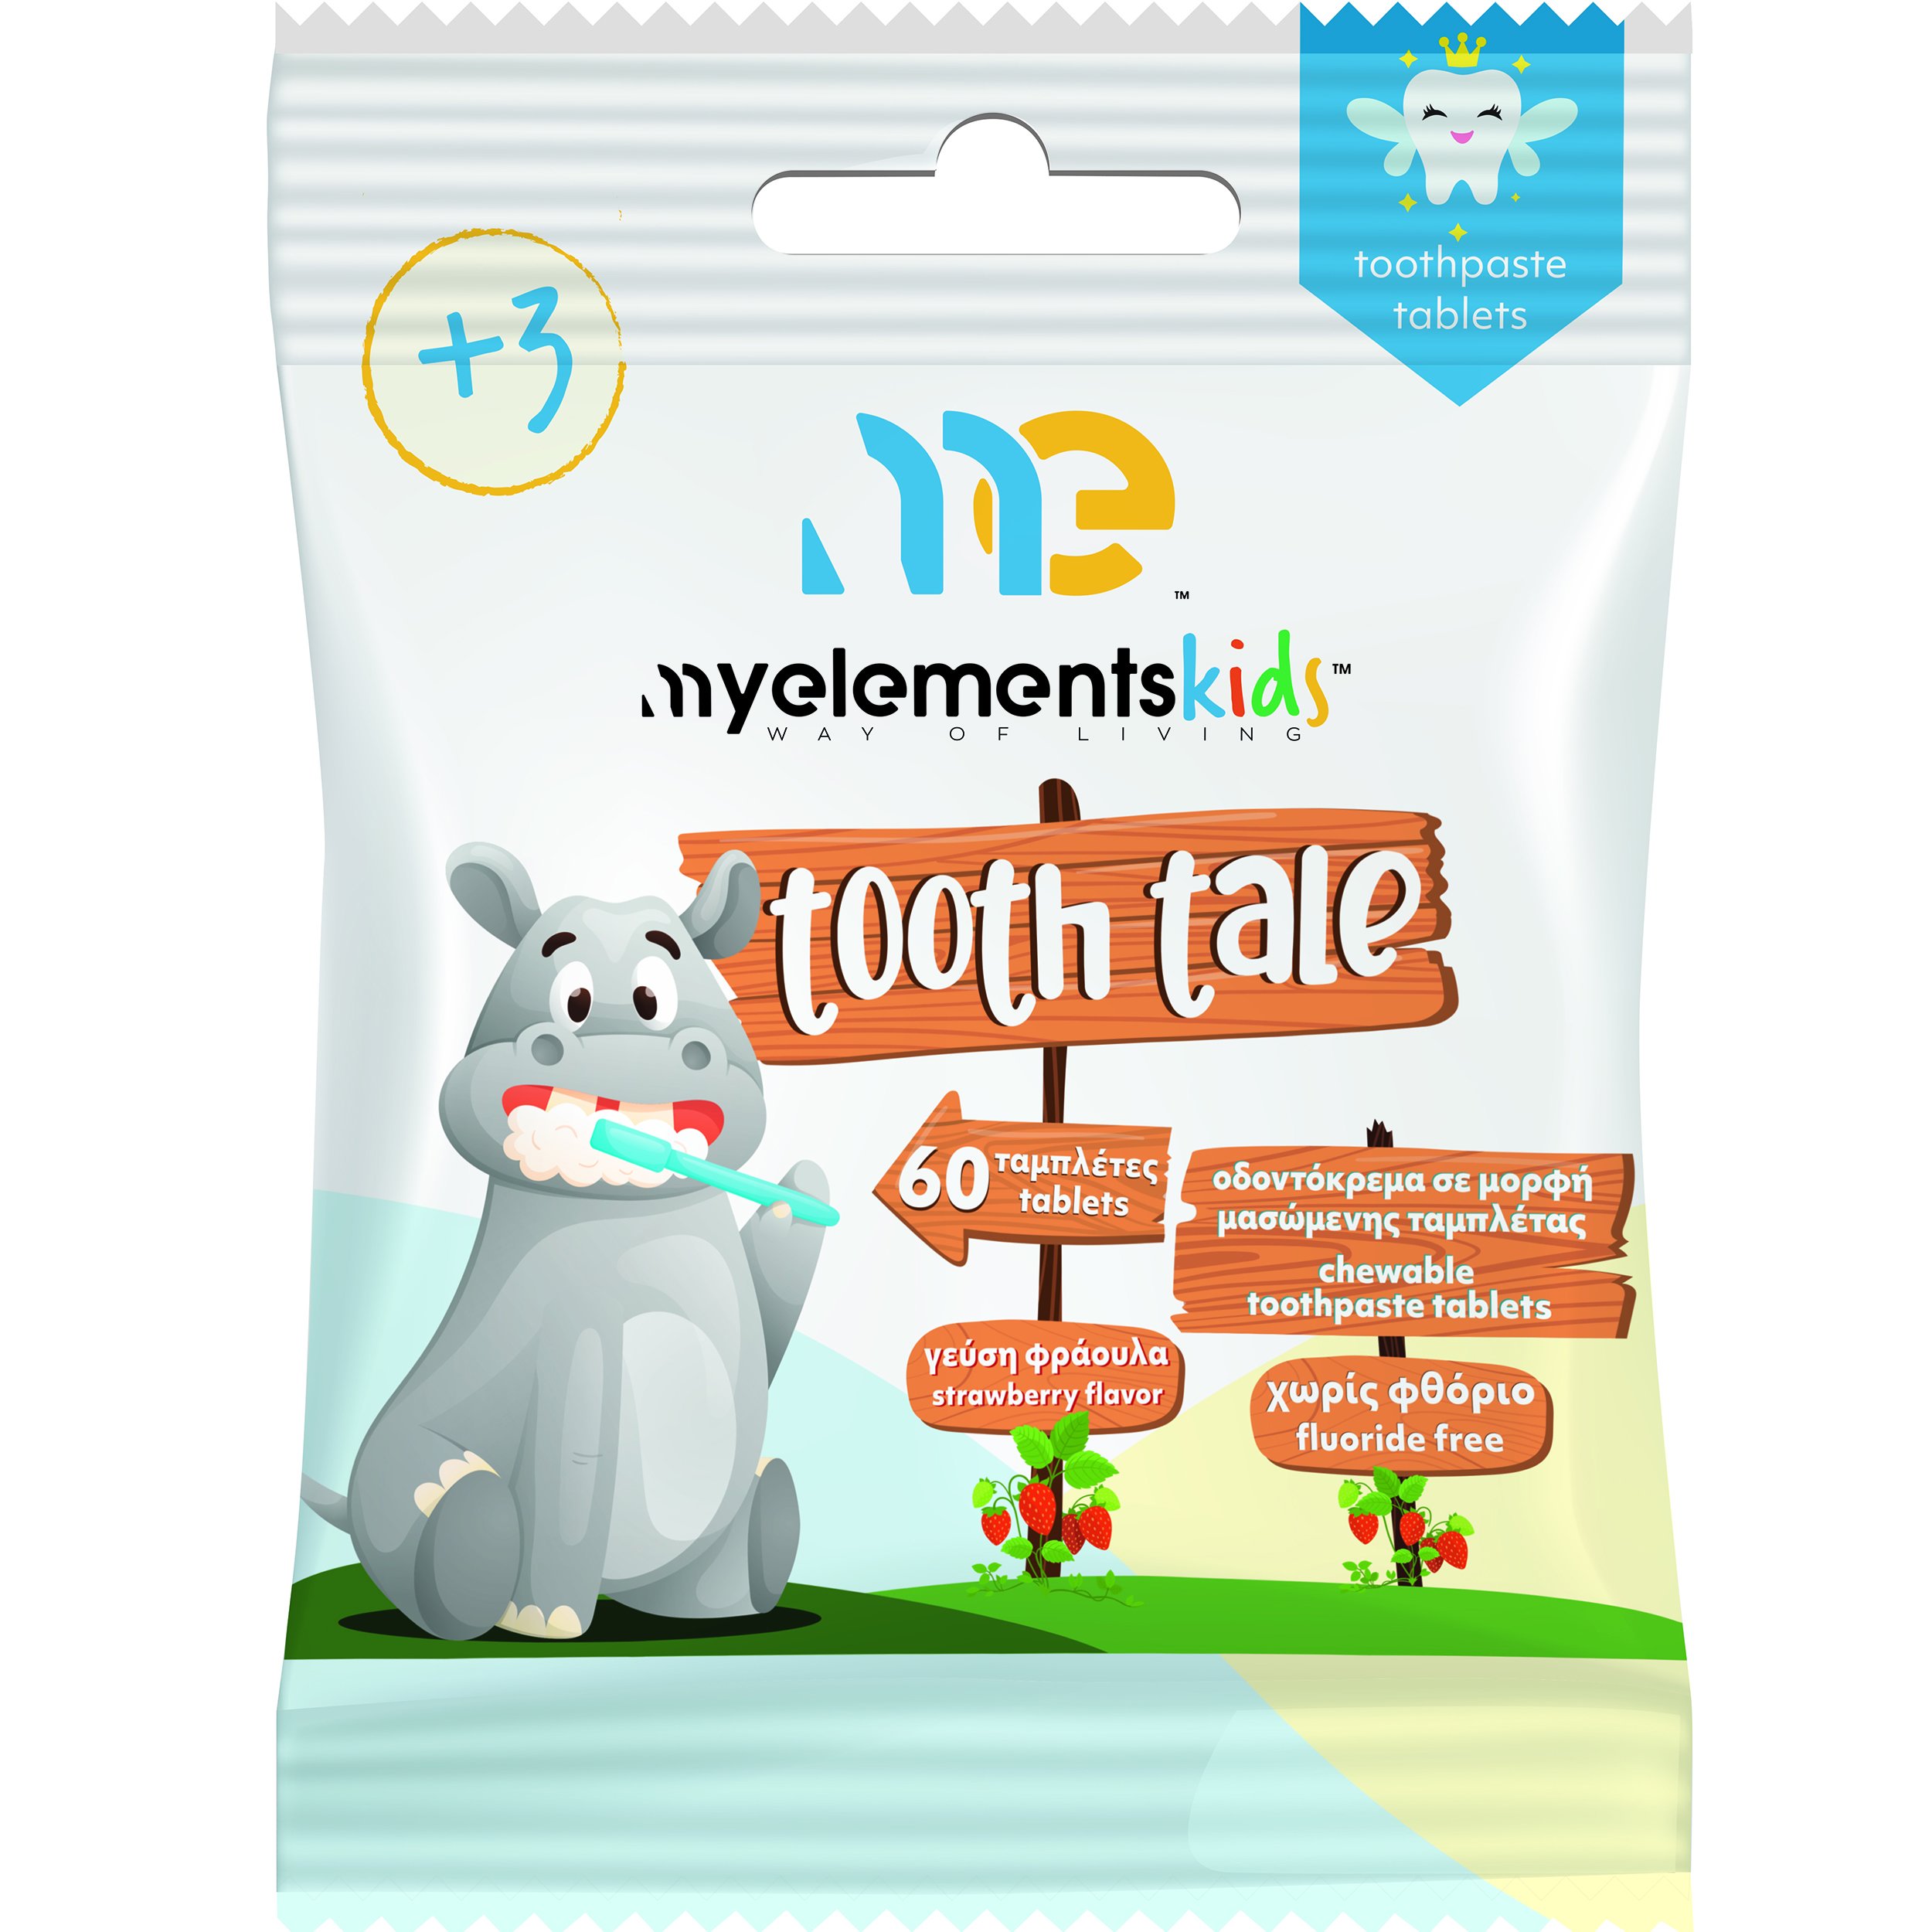 My Elements Kids Tooth Tale Chewable Toothpaste Tablets 3+ Years Παιδική Οδοντόκρεμα σε Μορφή Ταμπλέτας Χωρίς Φθόριο & Γεύση Φράουλα 60 Chew.tabs 58064